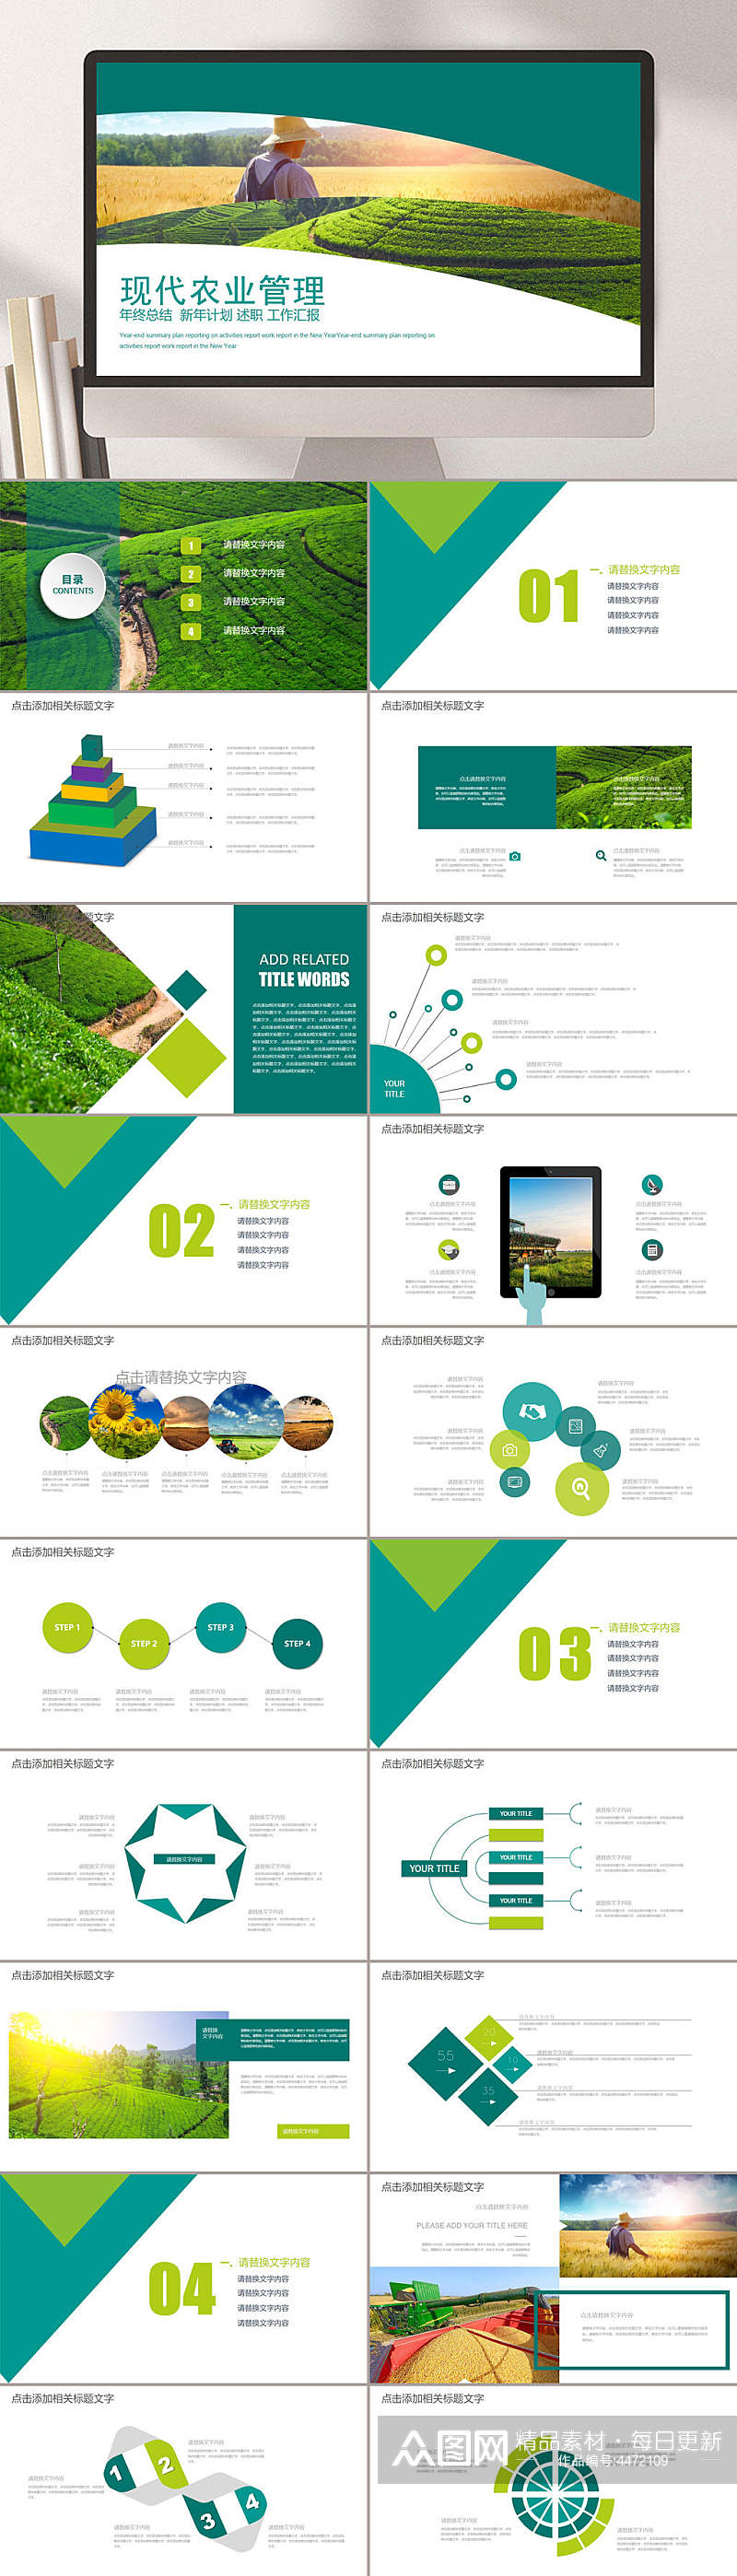 绿色现代农业管理动态PPT素材